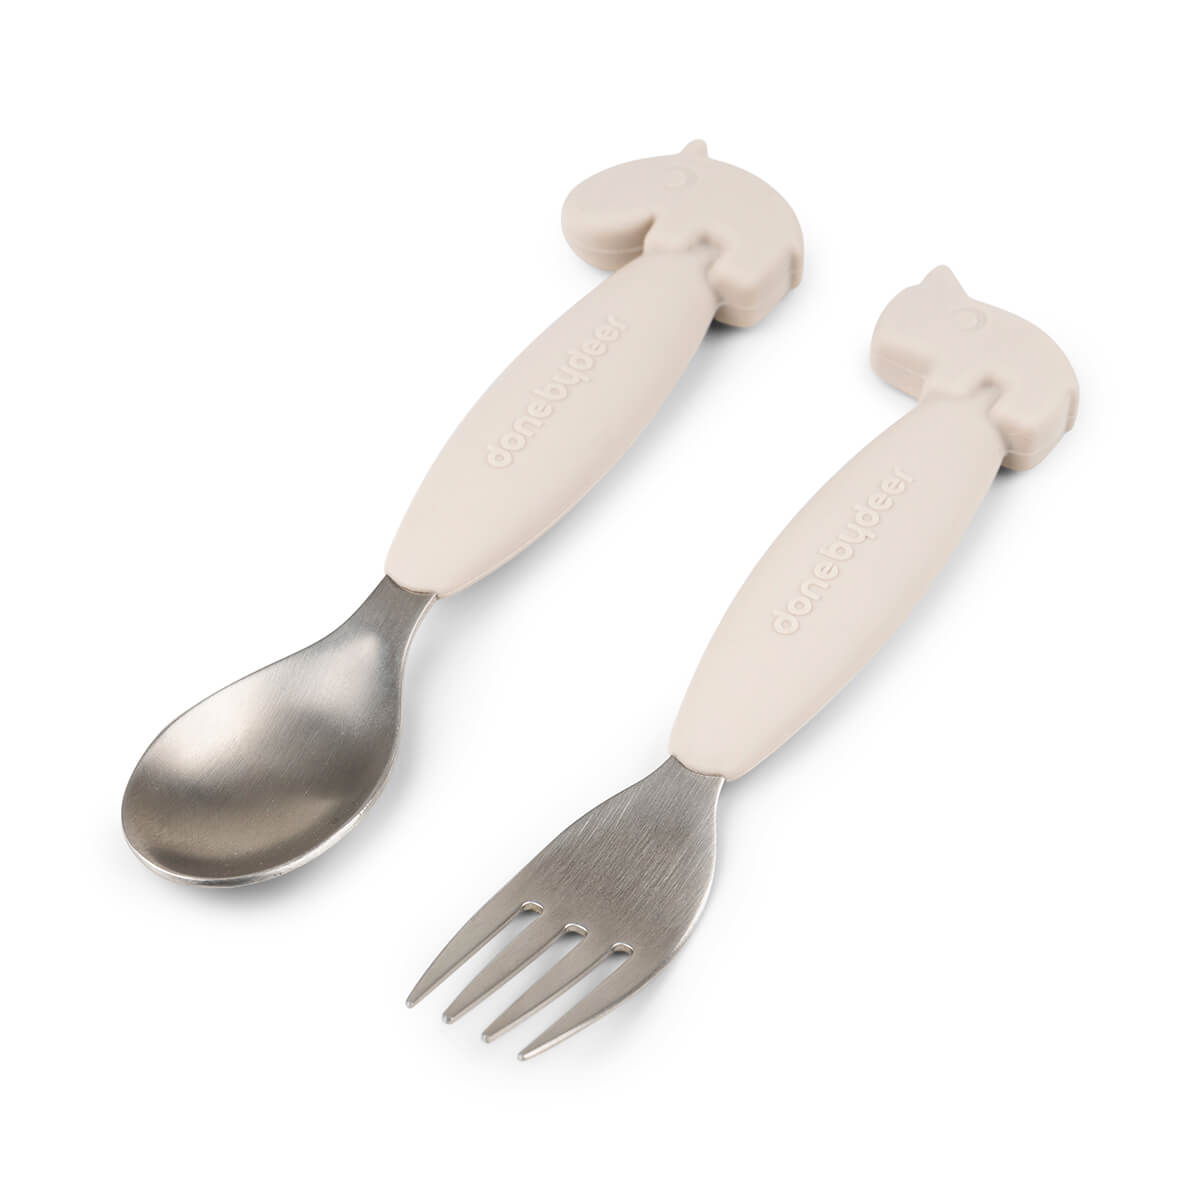 Easy-grip spoon and fork set - Deer friends - Sand